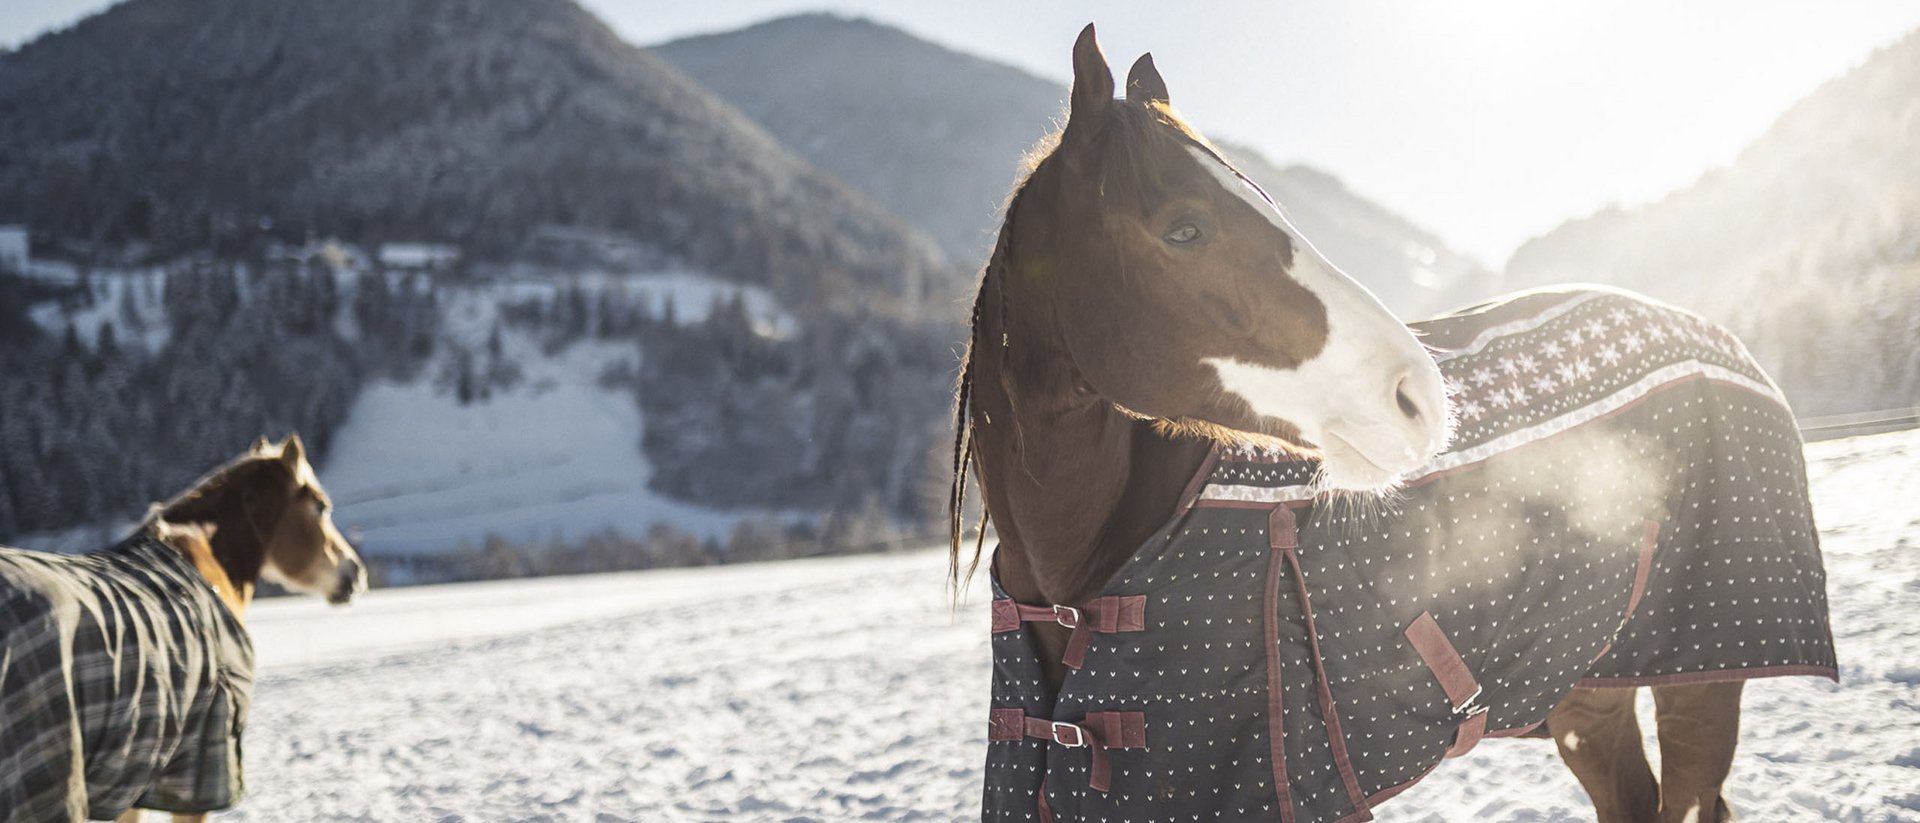 Das Reithotel in Südtirol für Pferdeliebhaber